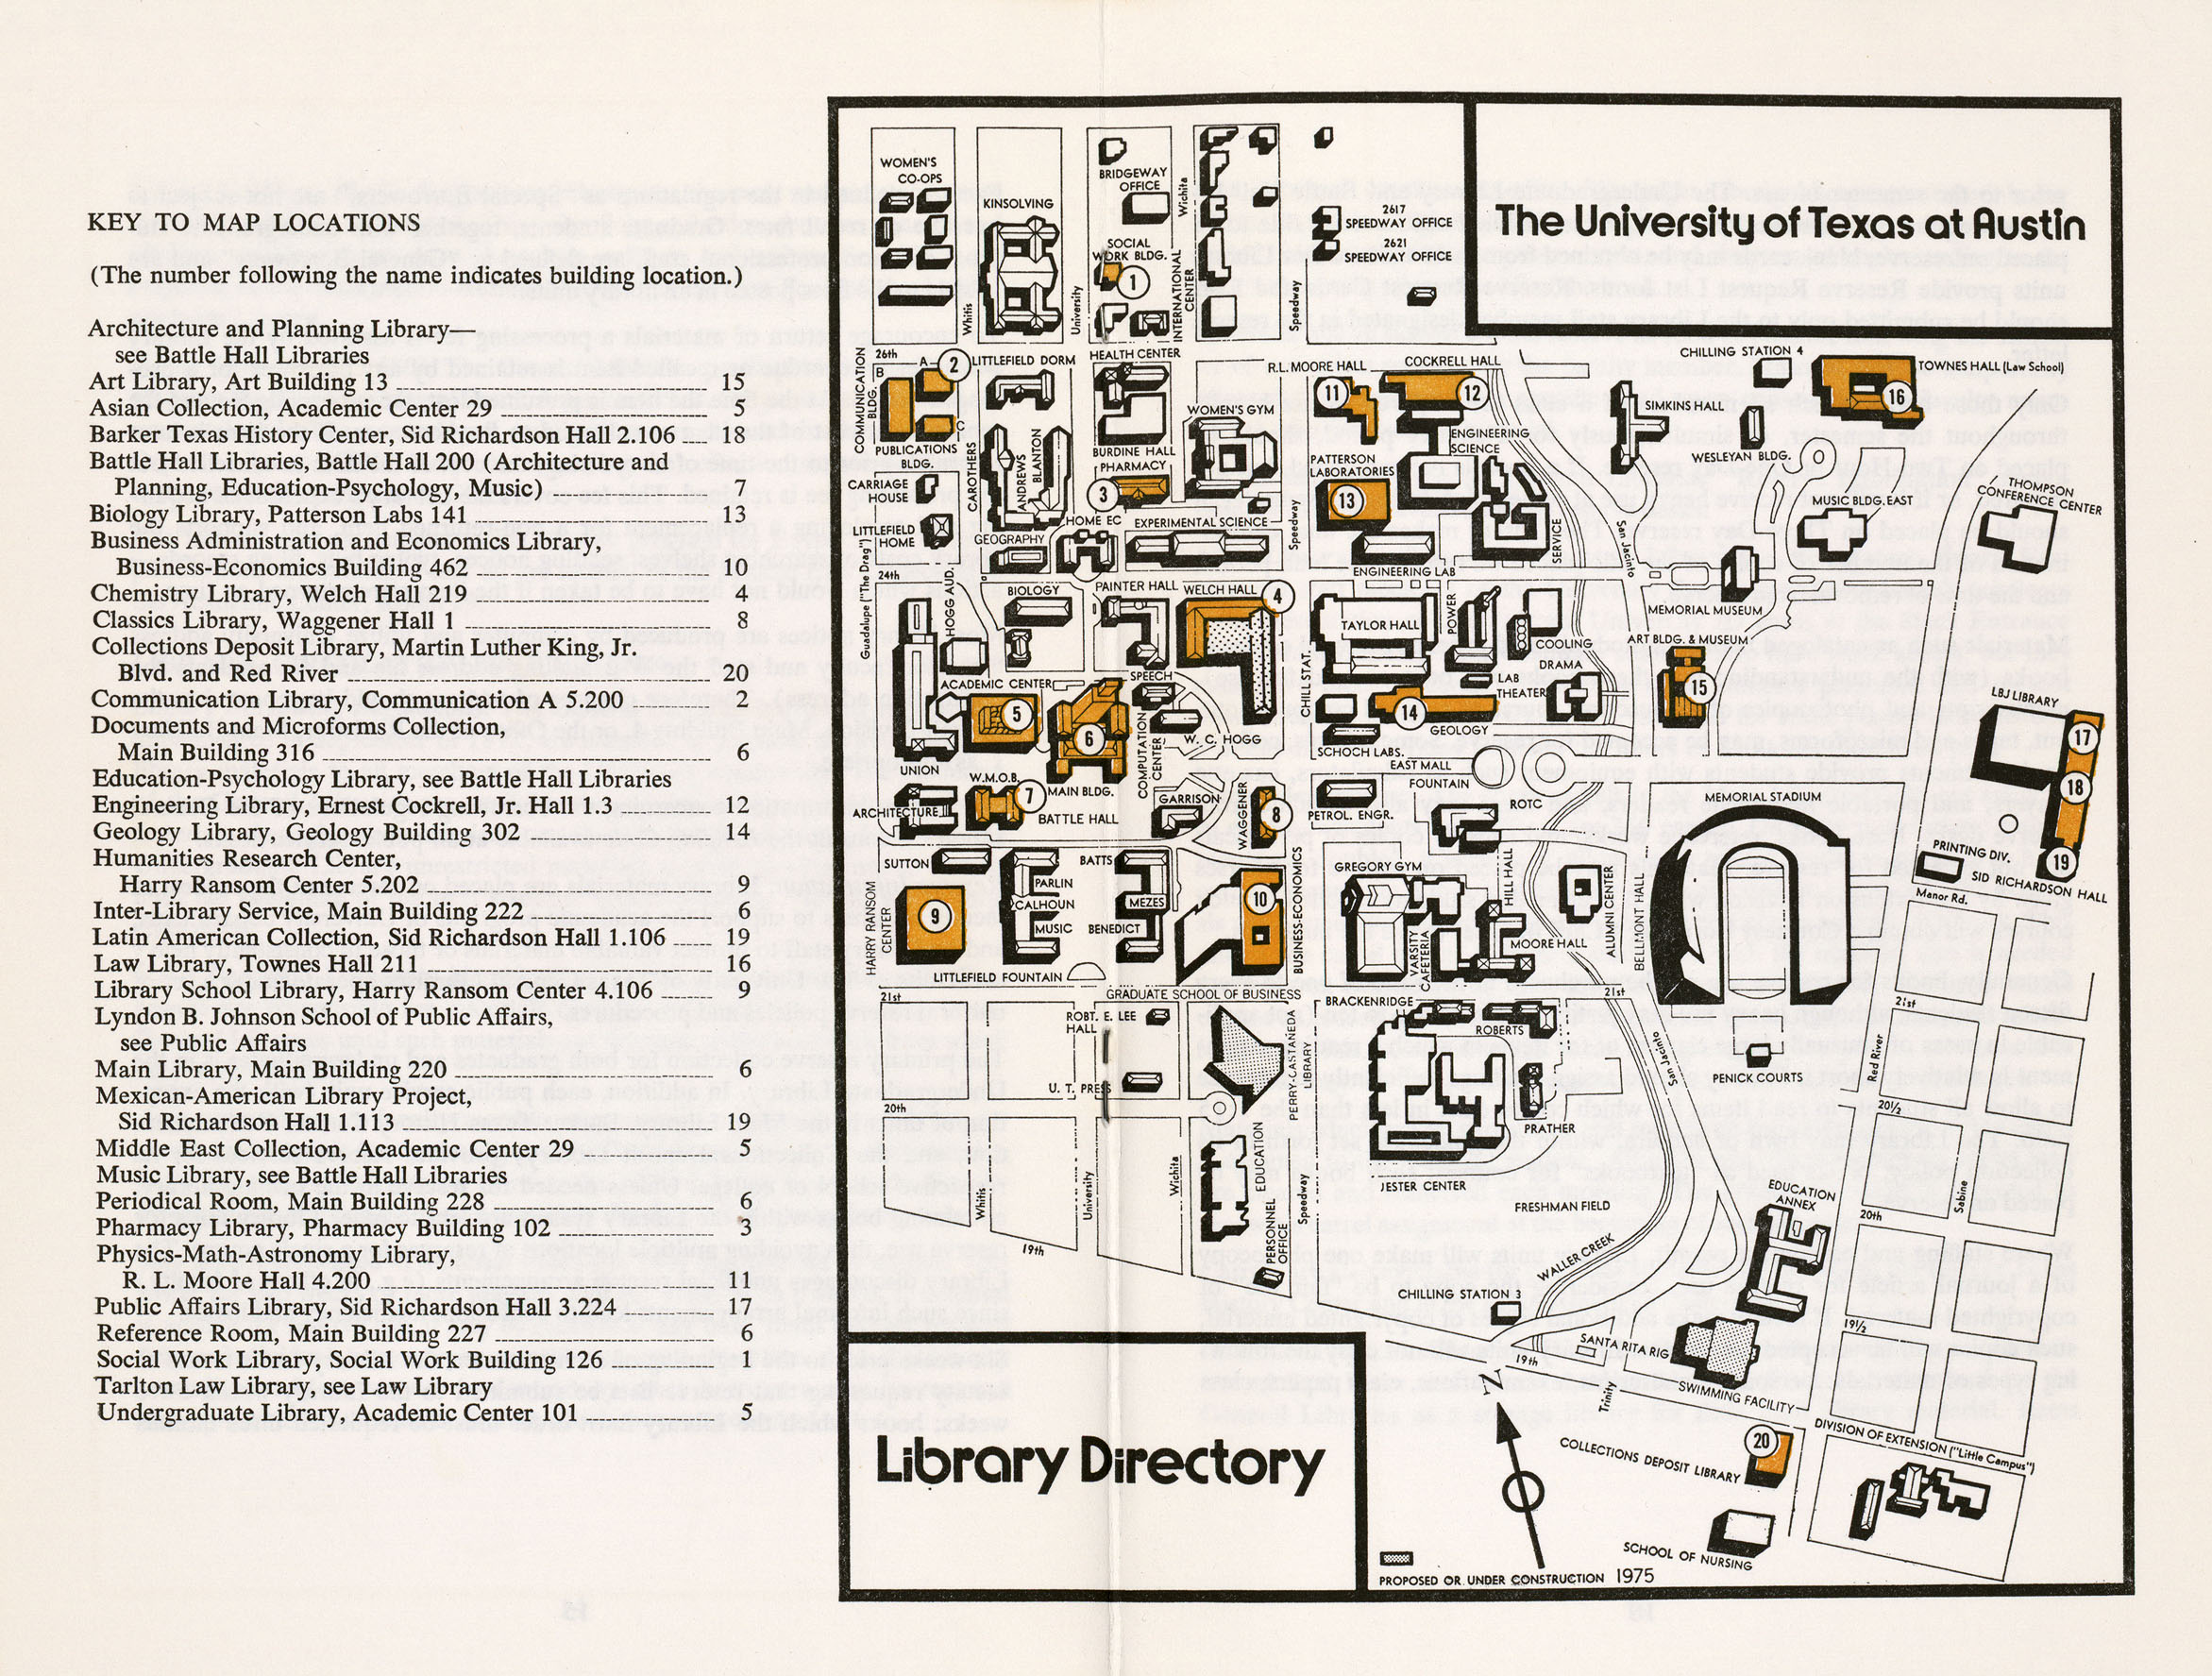 http://www.lib.utexas.edu/maps/ut_austin/university_of_texas-1975.jpg